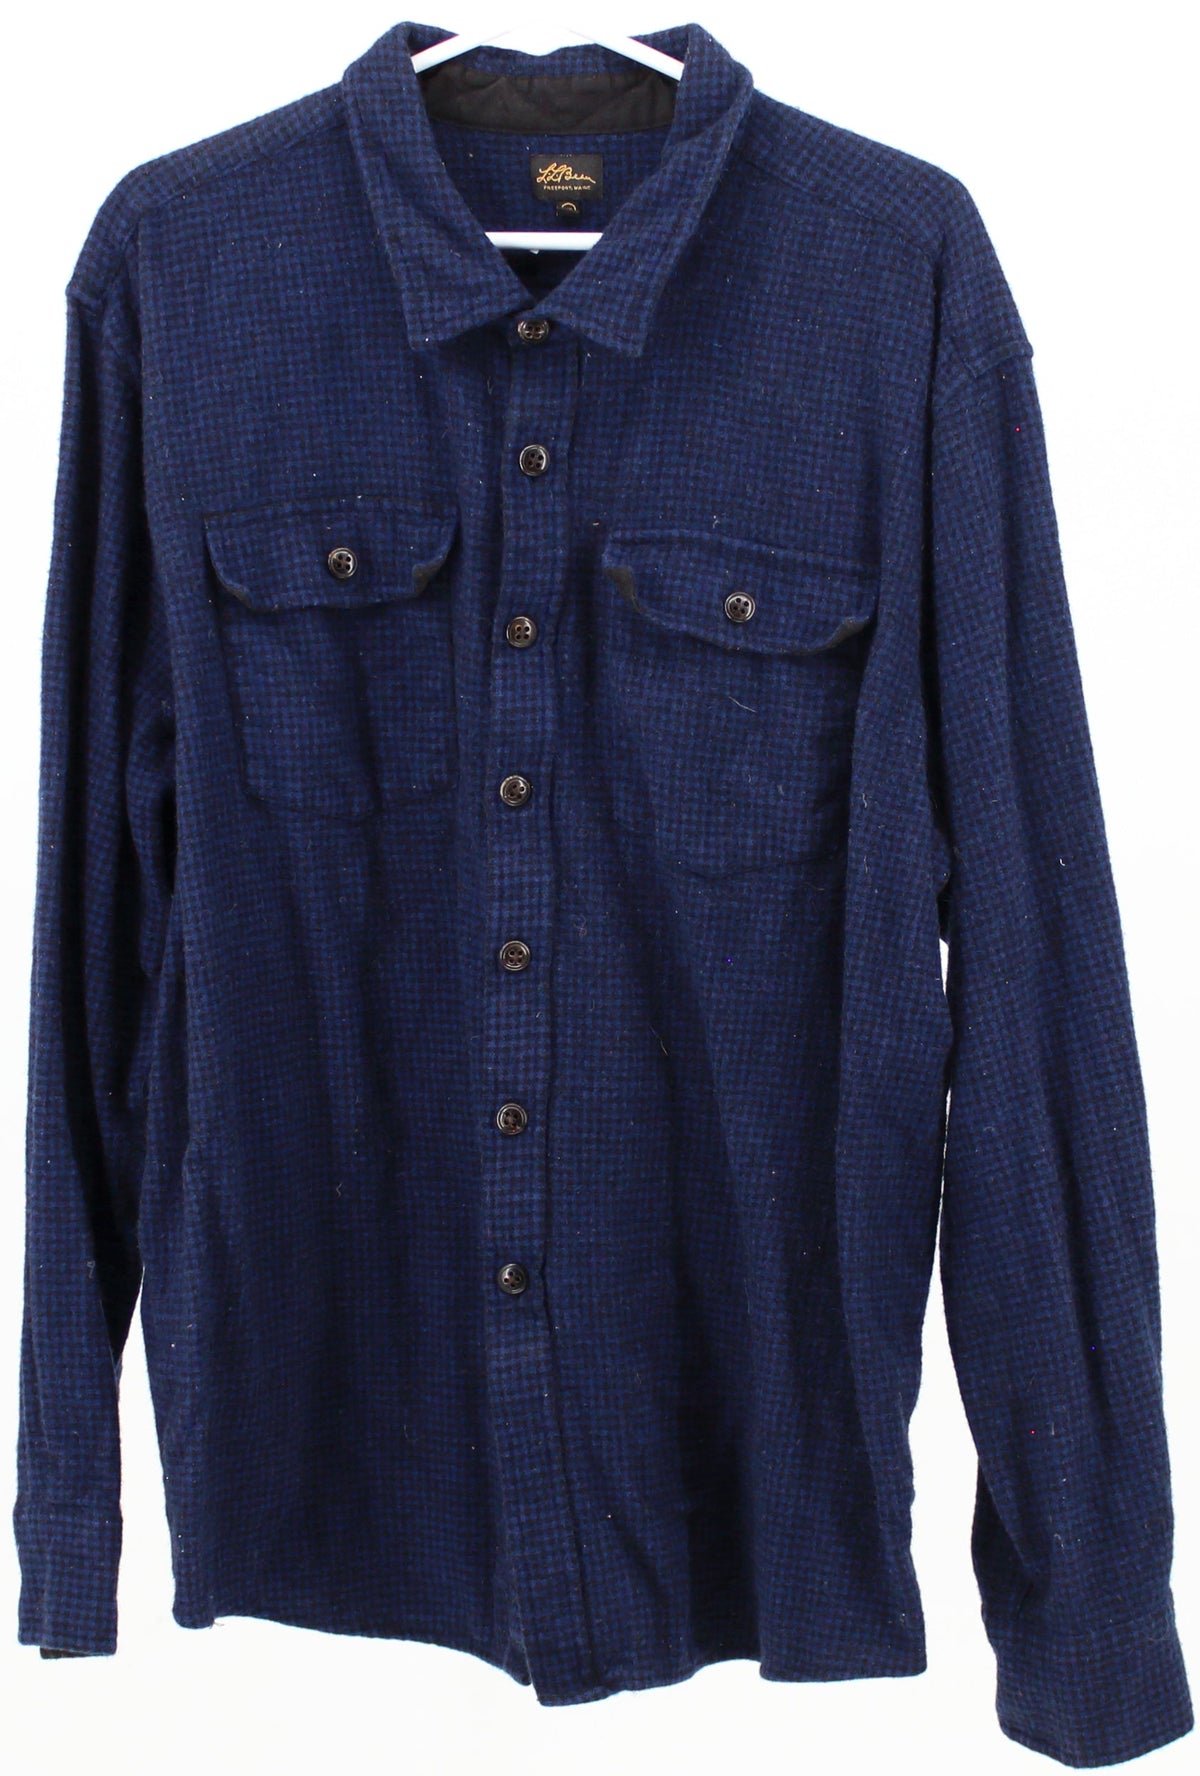 L.L.Bean Blue and Black Plaid Flannel Shirt